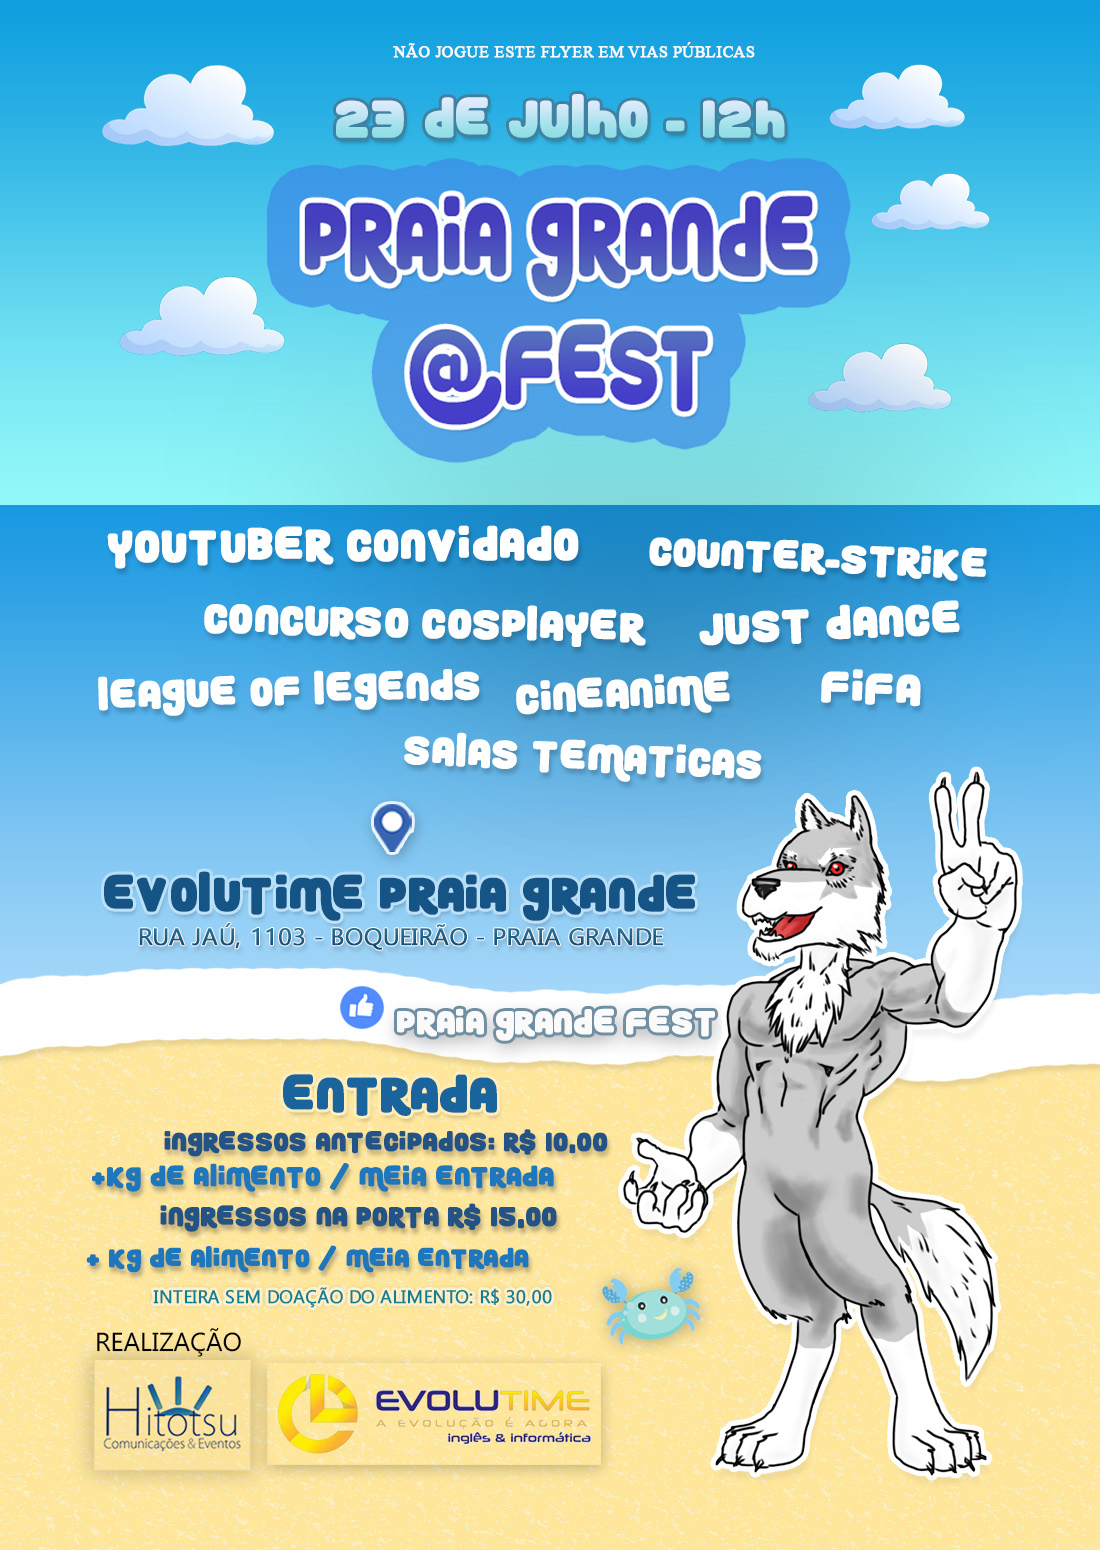 Praia Grande @Fest 2016 folder